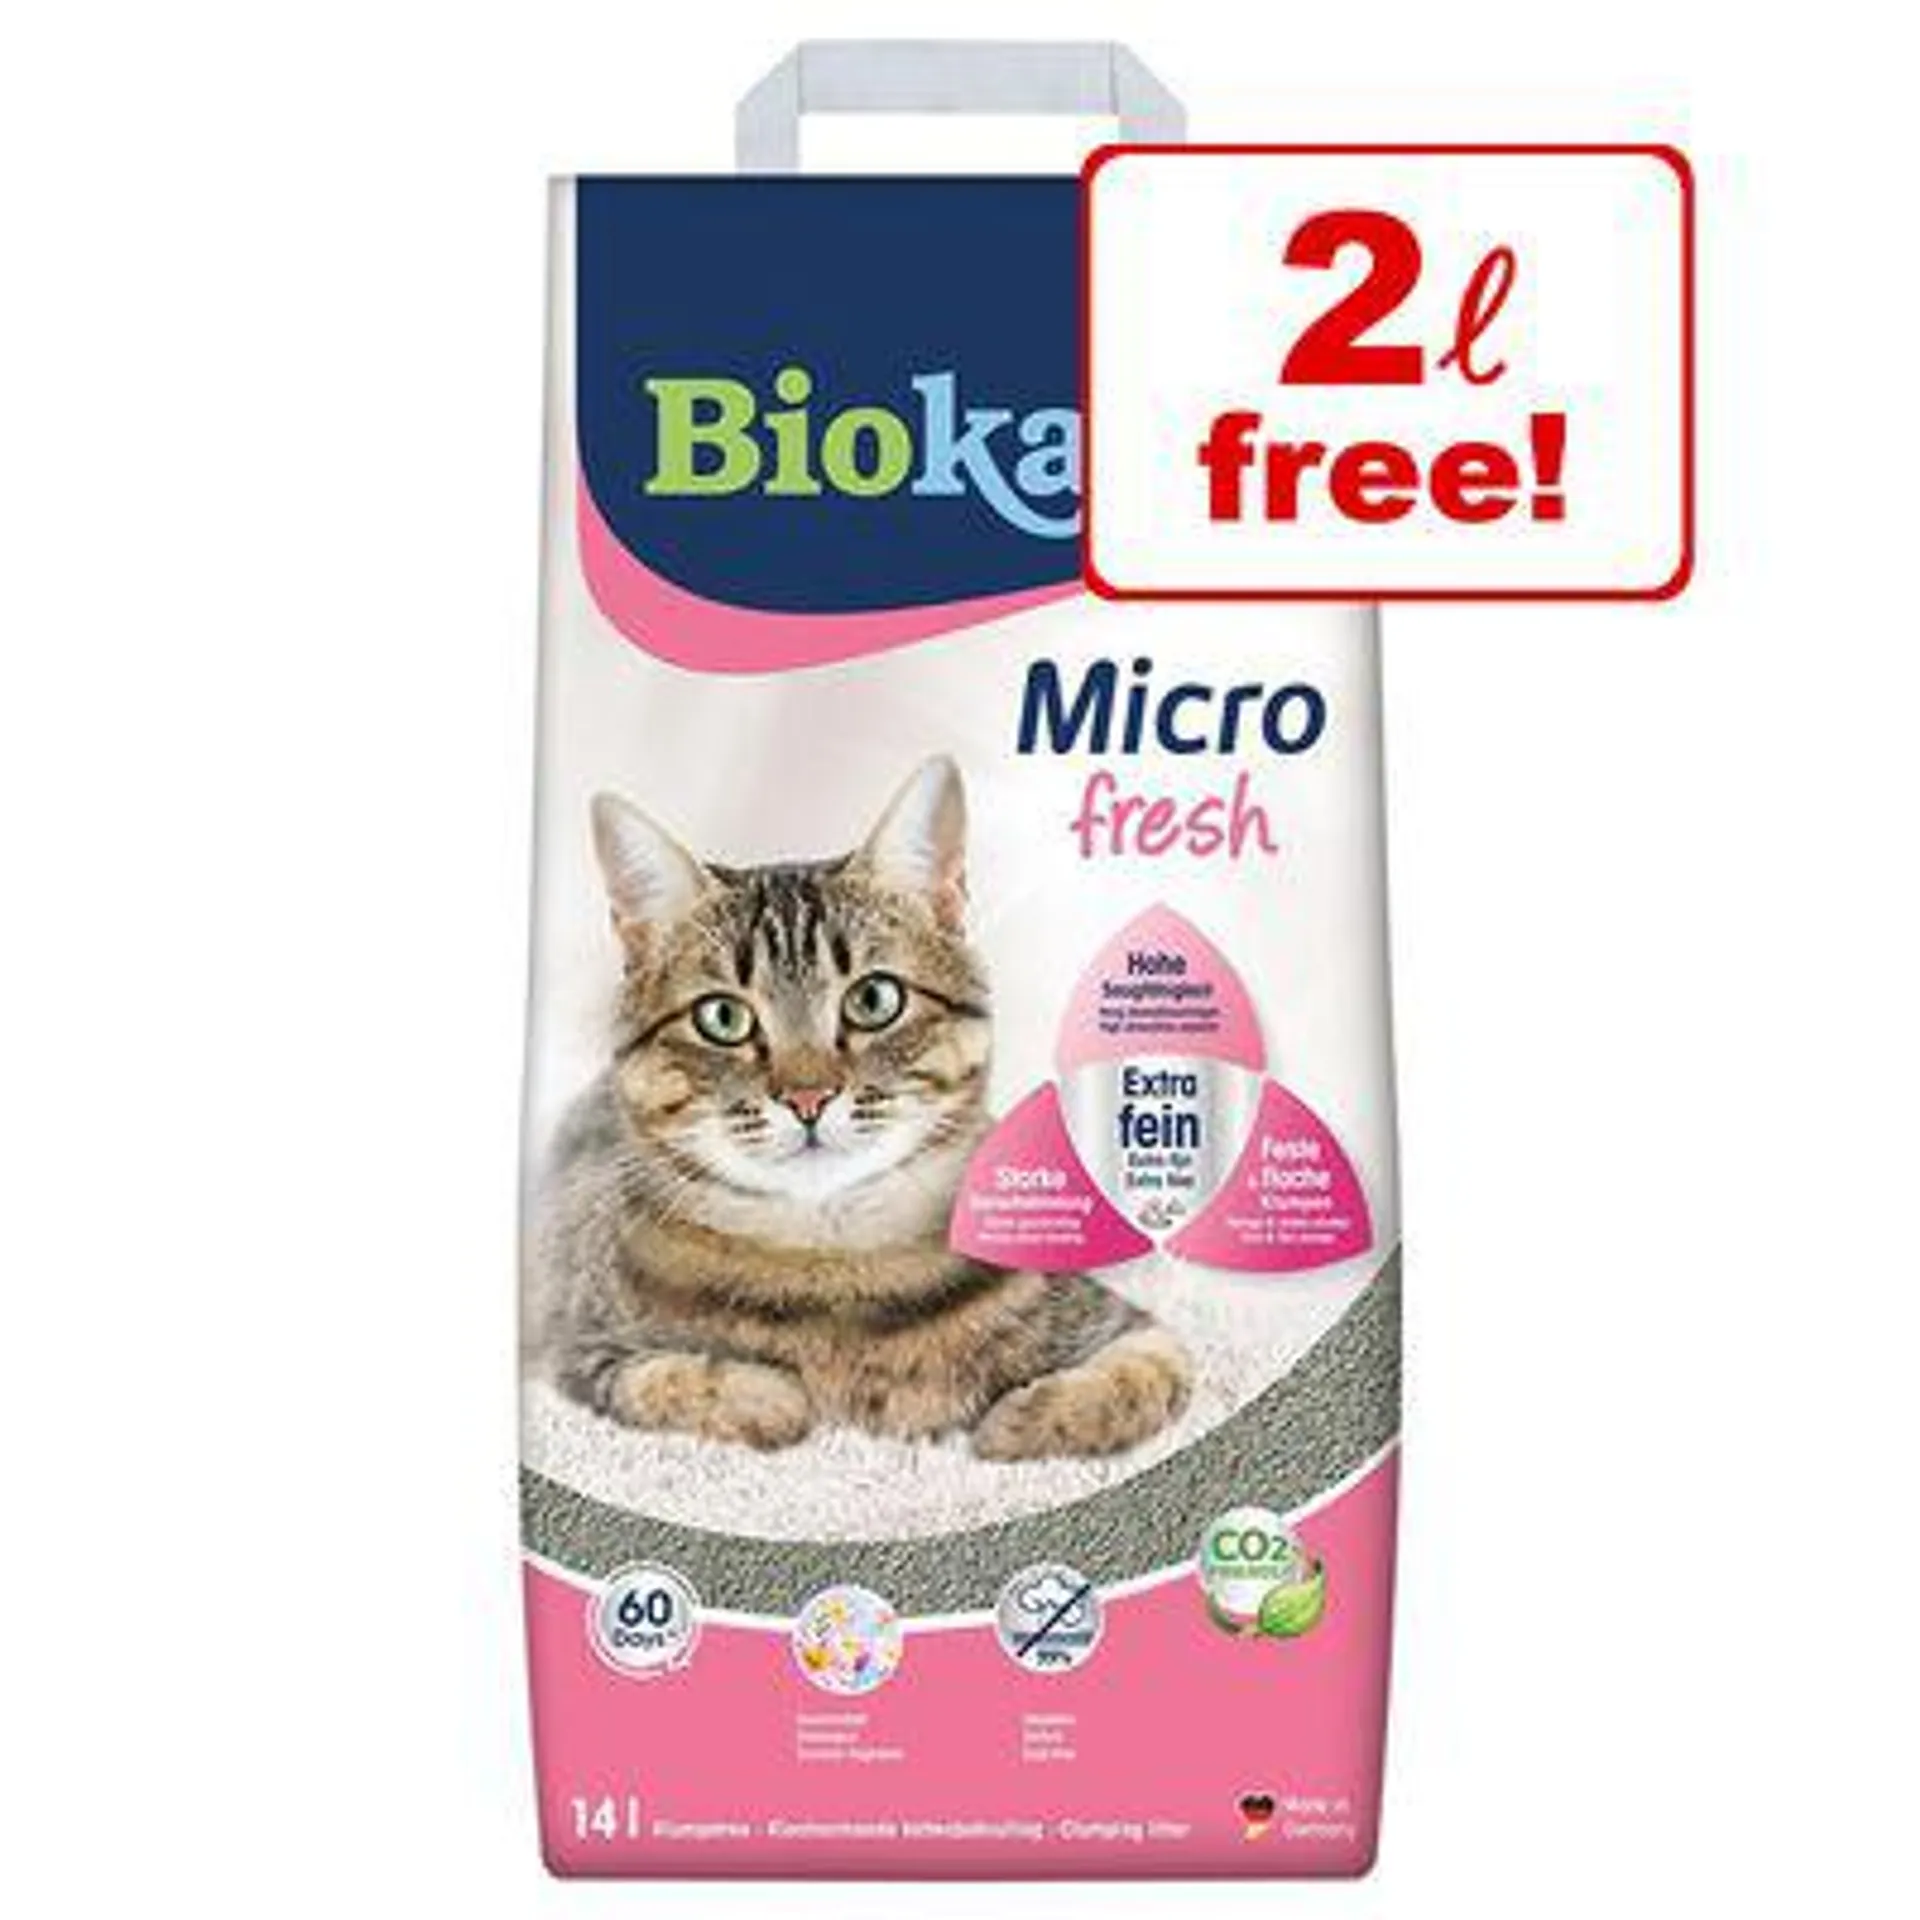 14l Biokat's Micro Clumping Cat Litter - 12 + 2l Free!*